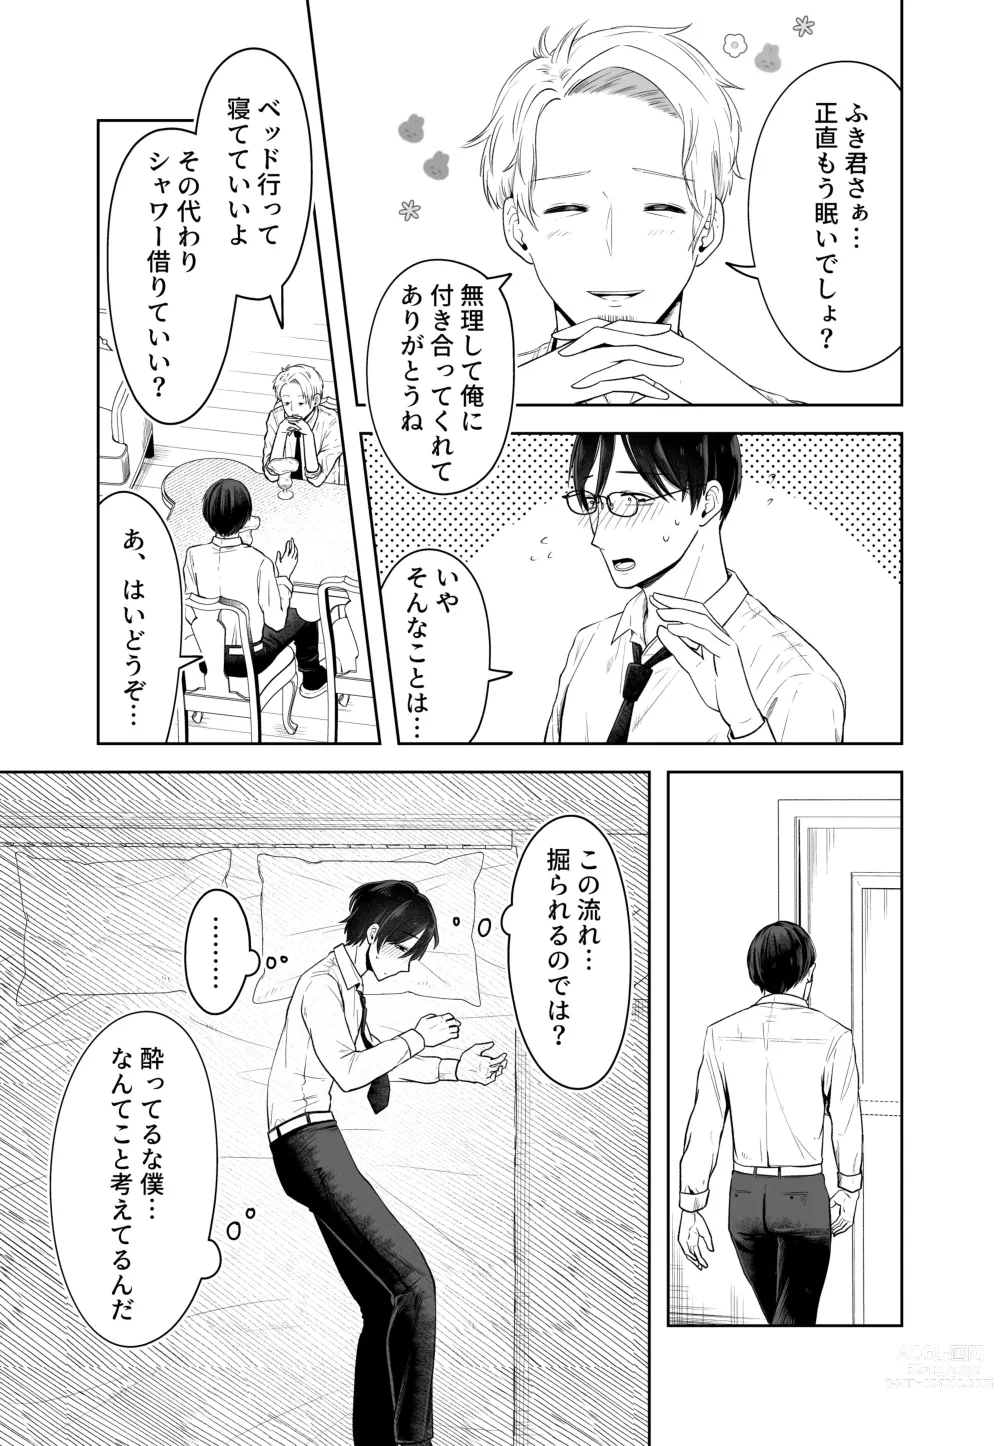 Page 19 of doujinshi Danna no Joushi ni Odosareru.